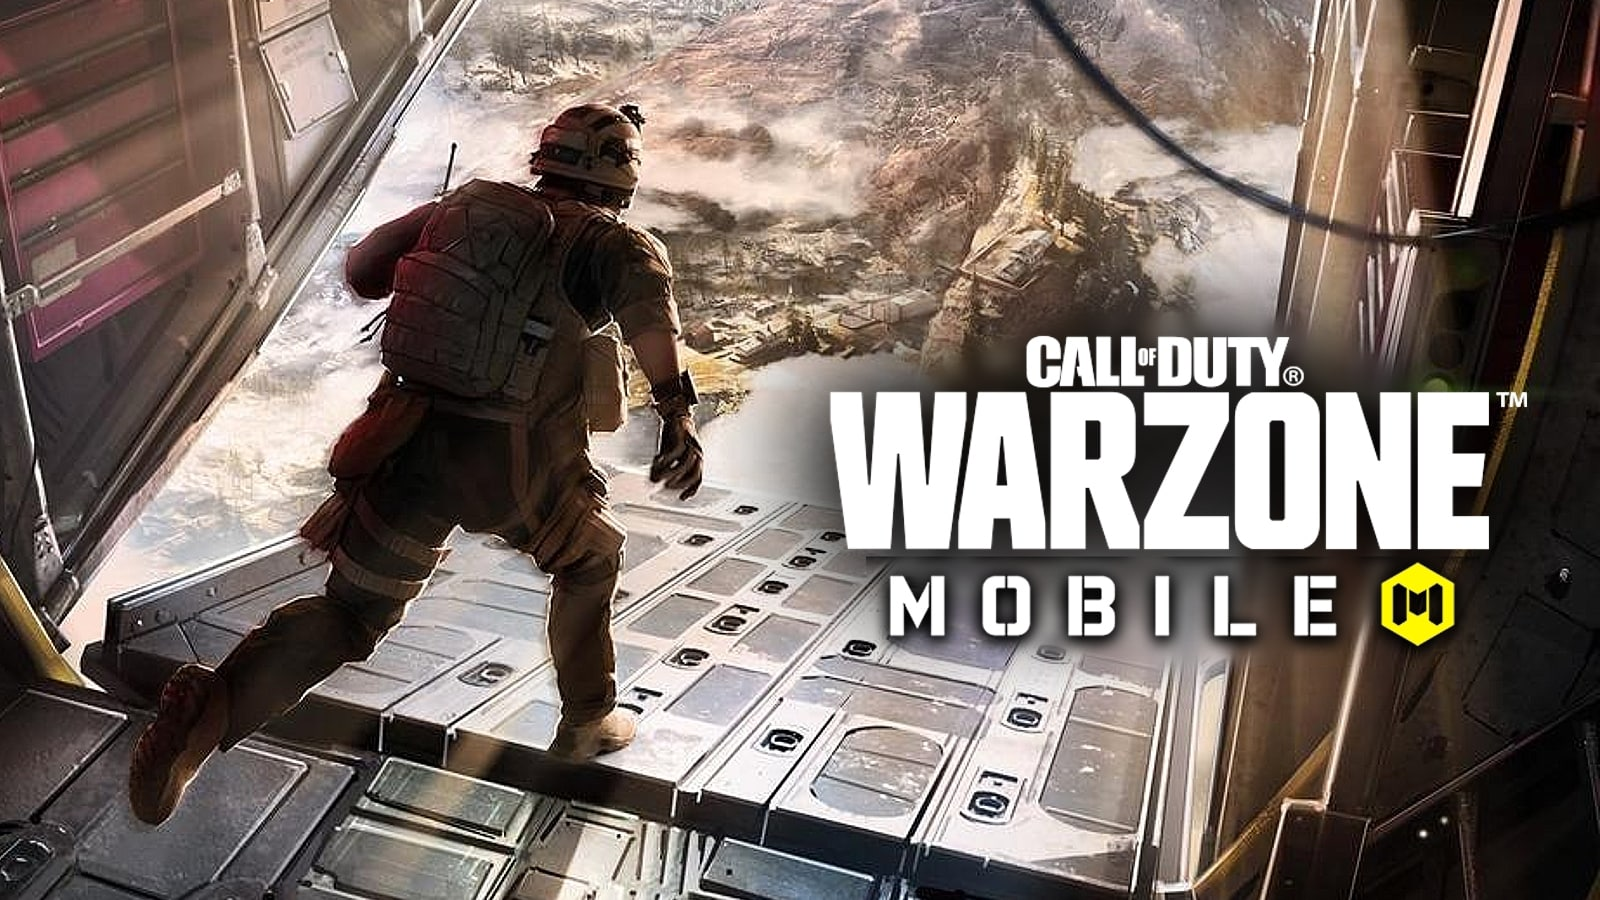 Call of Duty Warzone Mobile: Como fazer o pré-registro no Android